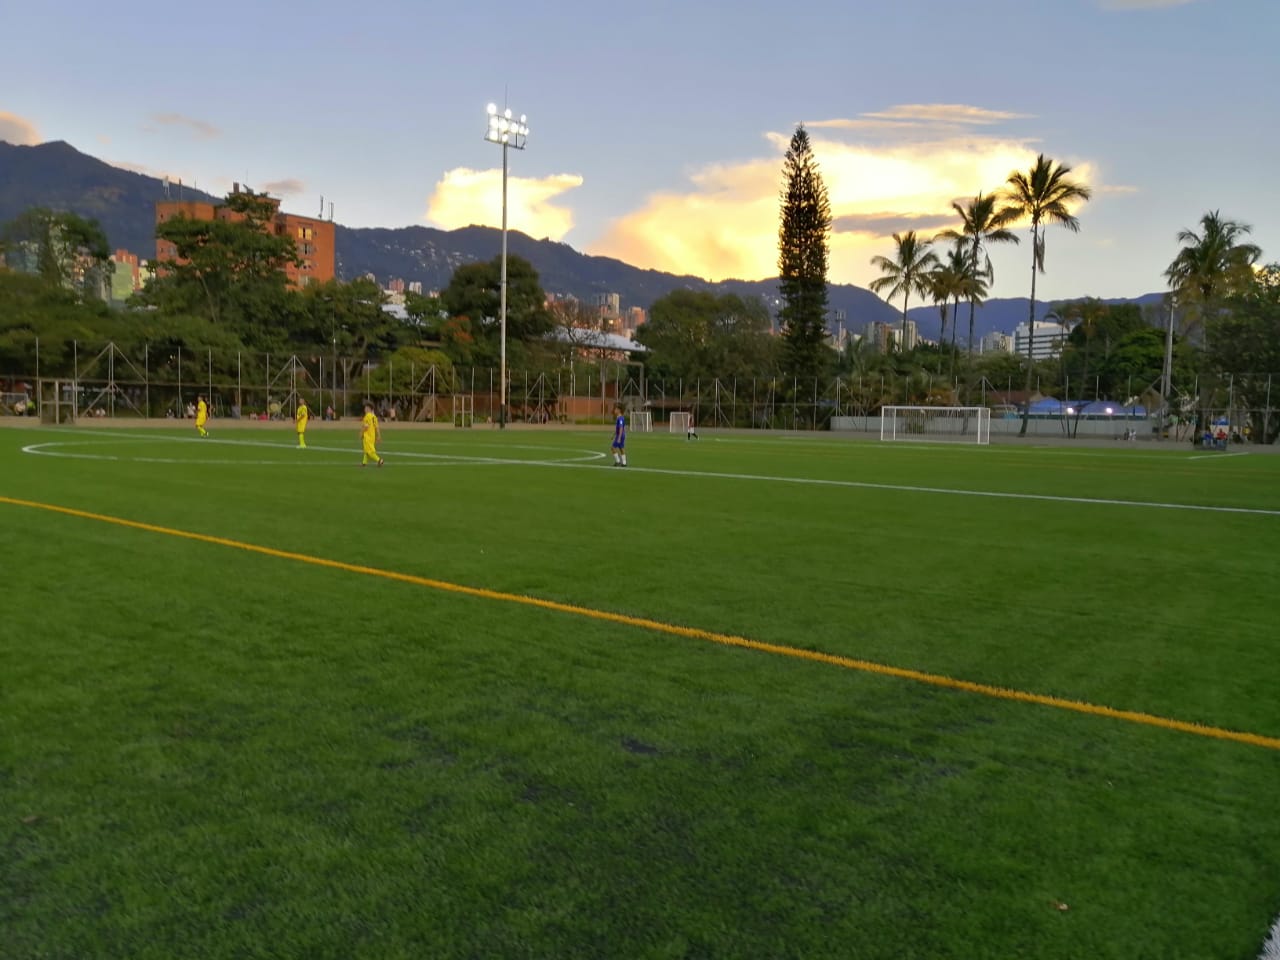 El POLI estrena nuevo gramado sintético y luminarias de su cancha de fútbol